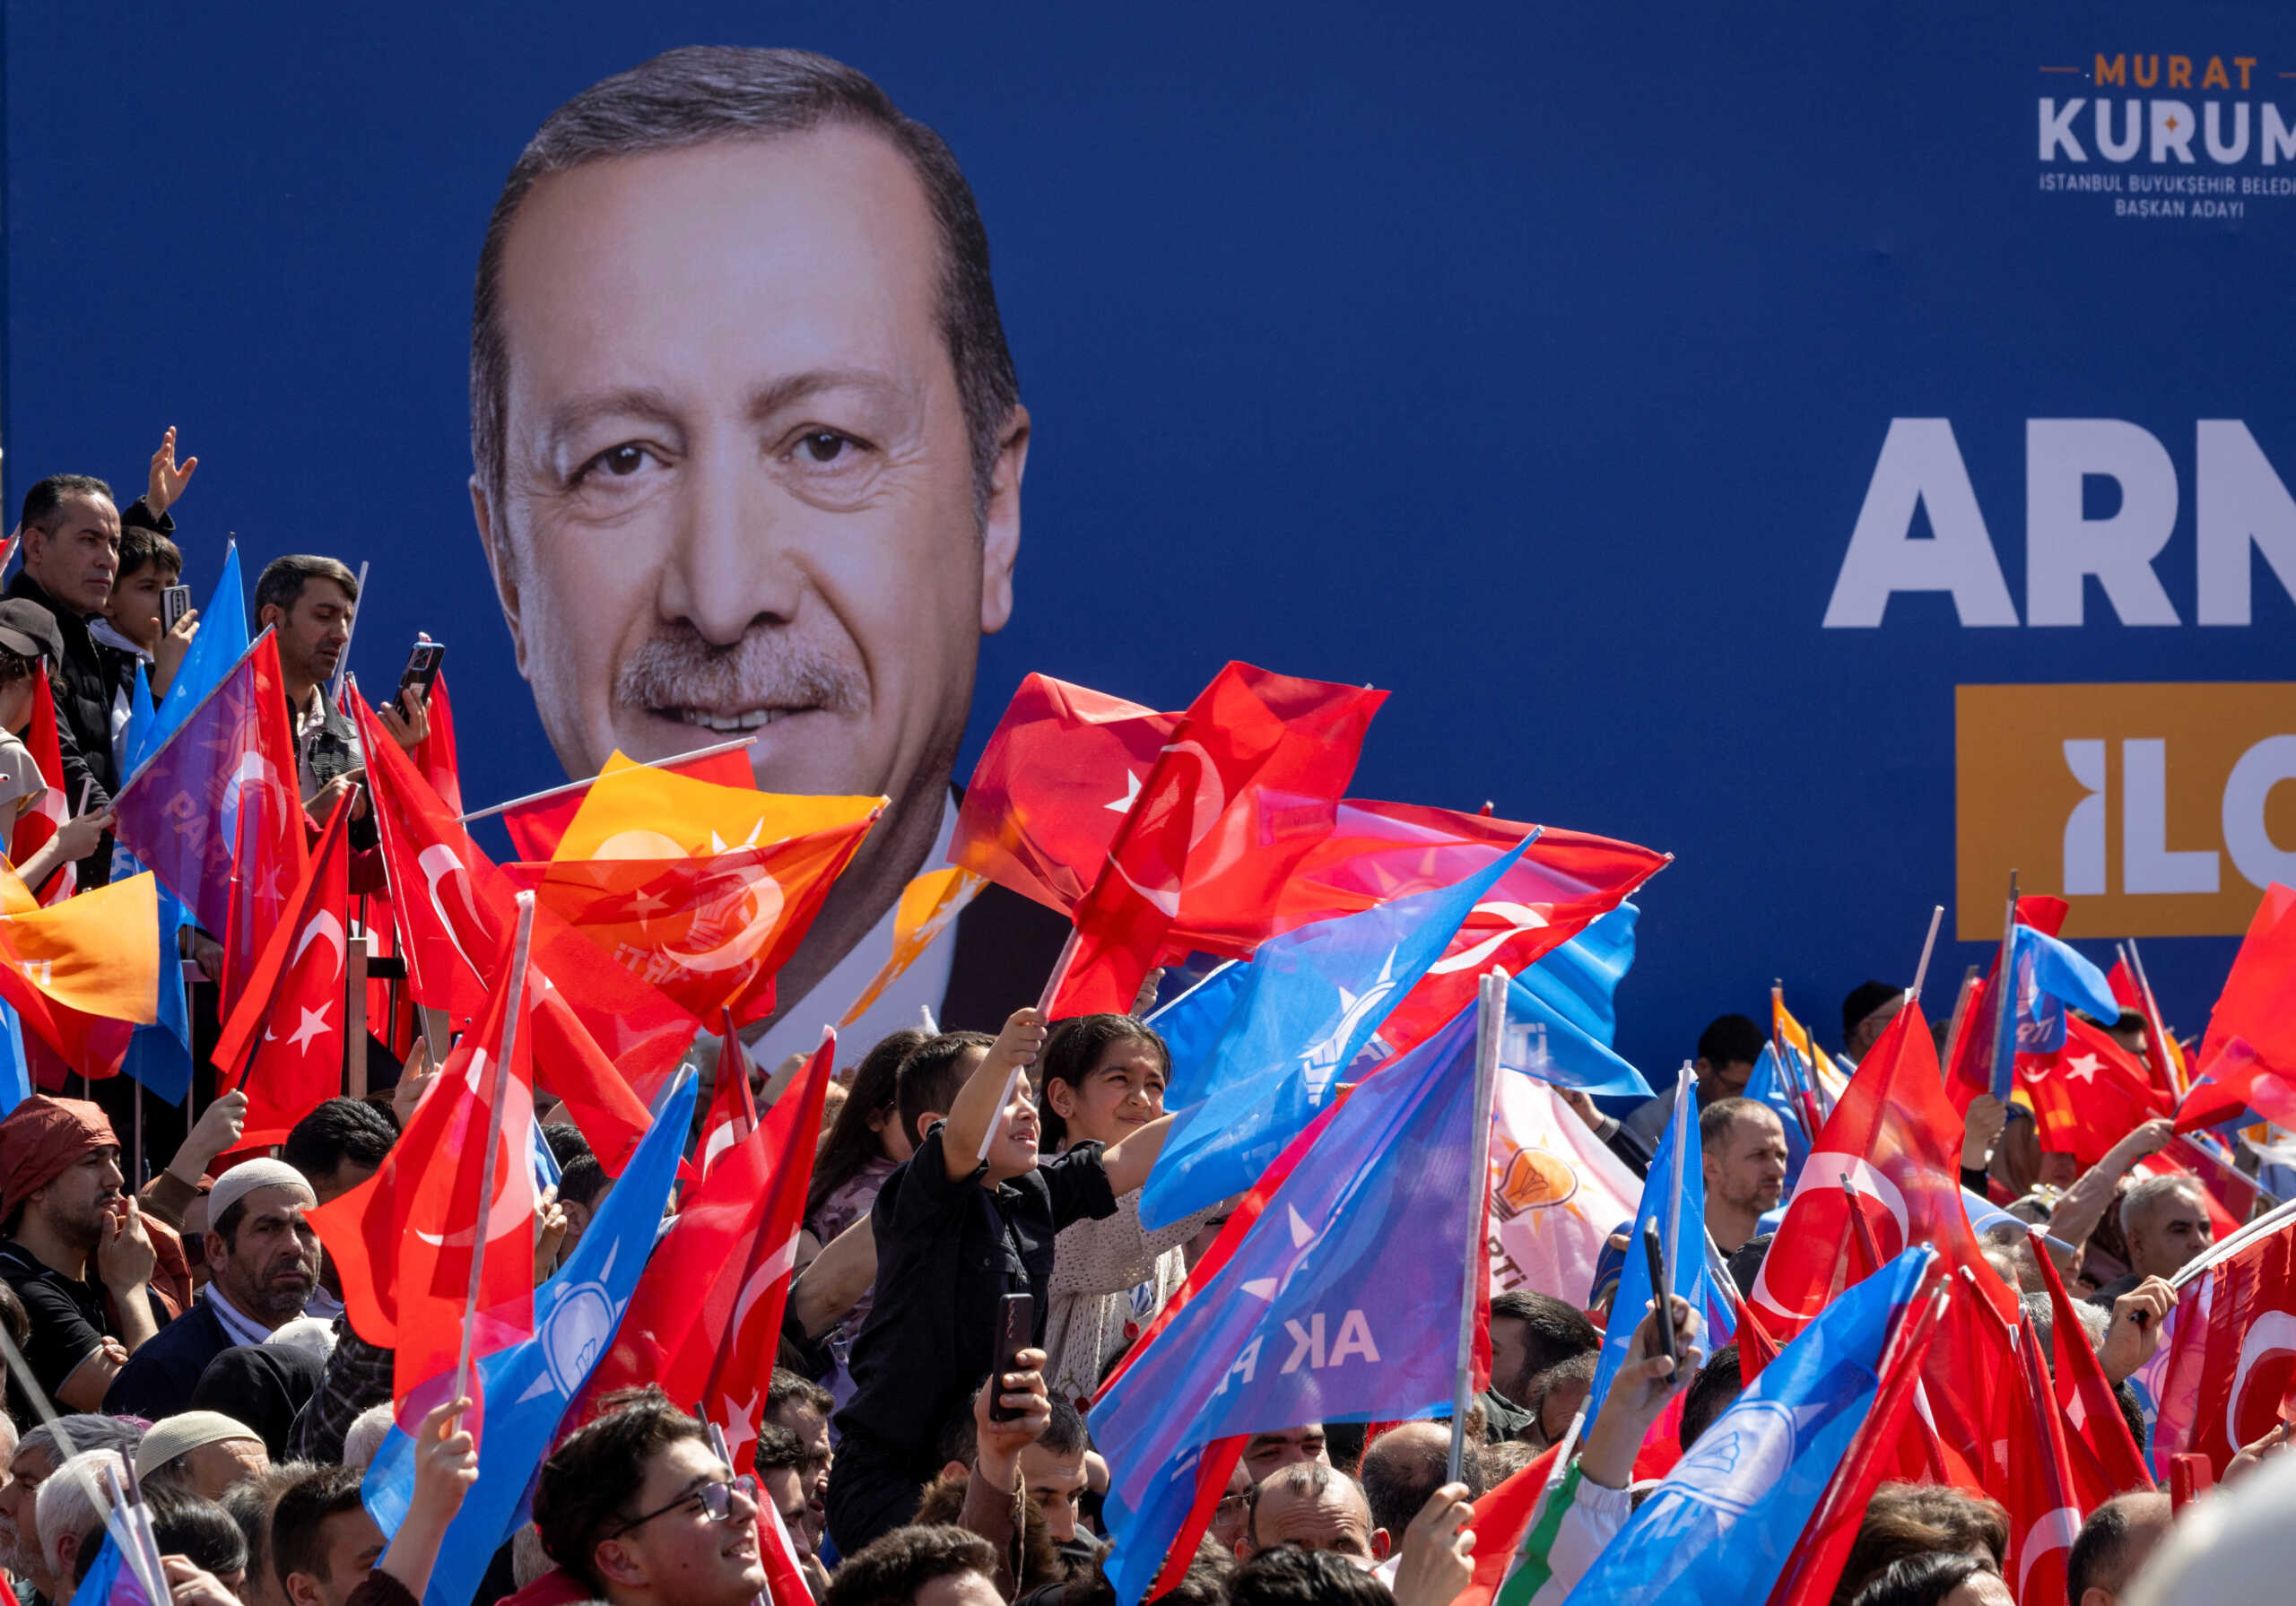 Δημοτικές εκλογές στην Τουρκία: Οι μονομάχοι σε Κωνσταντινούπολη, Άγκυρα και Σμύρνη